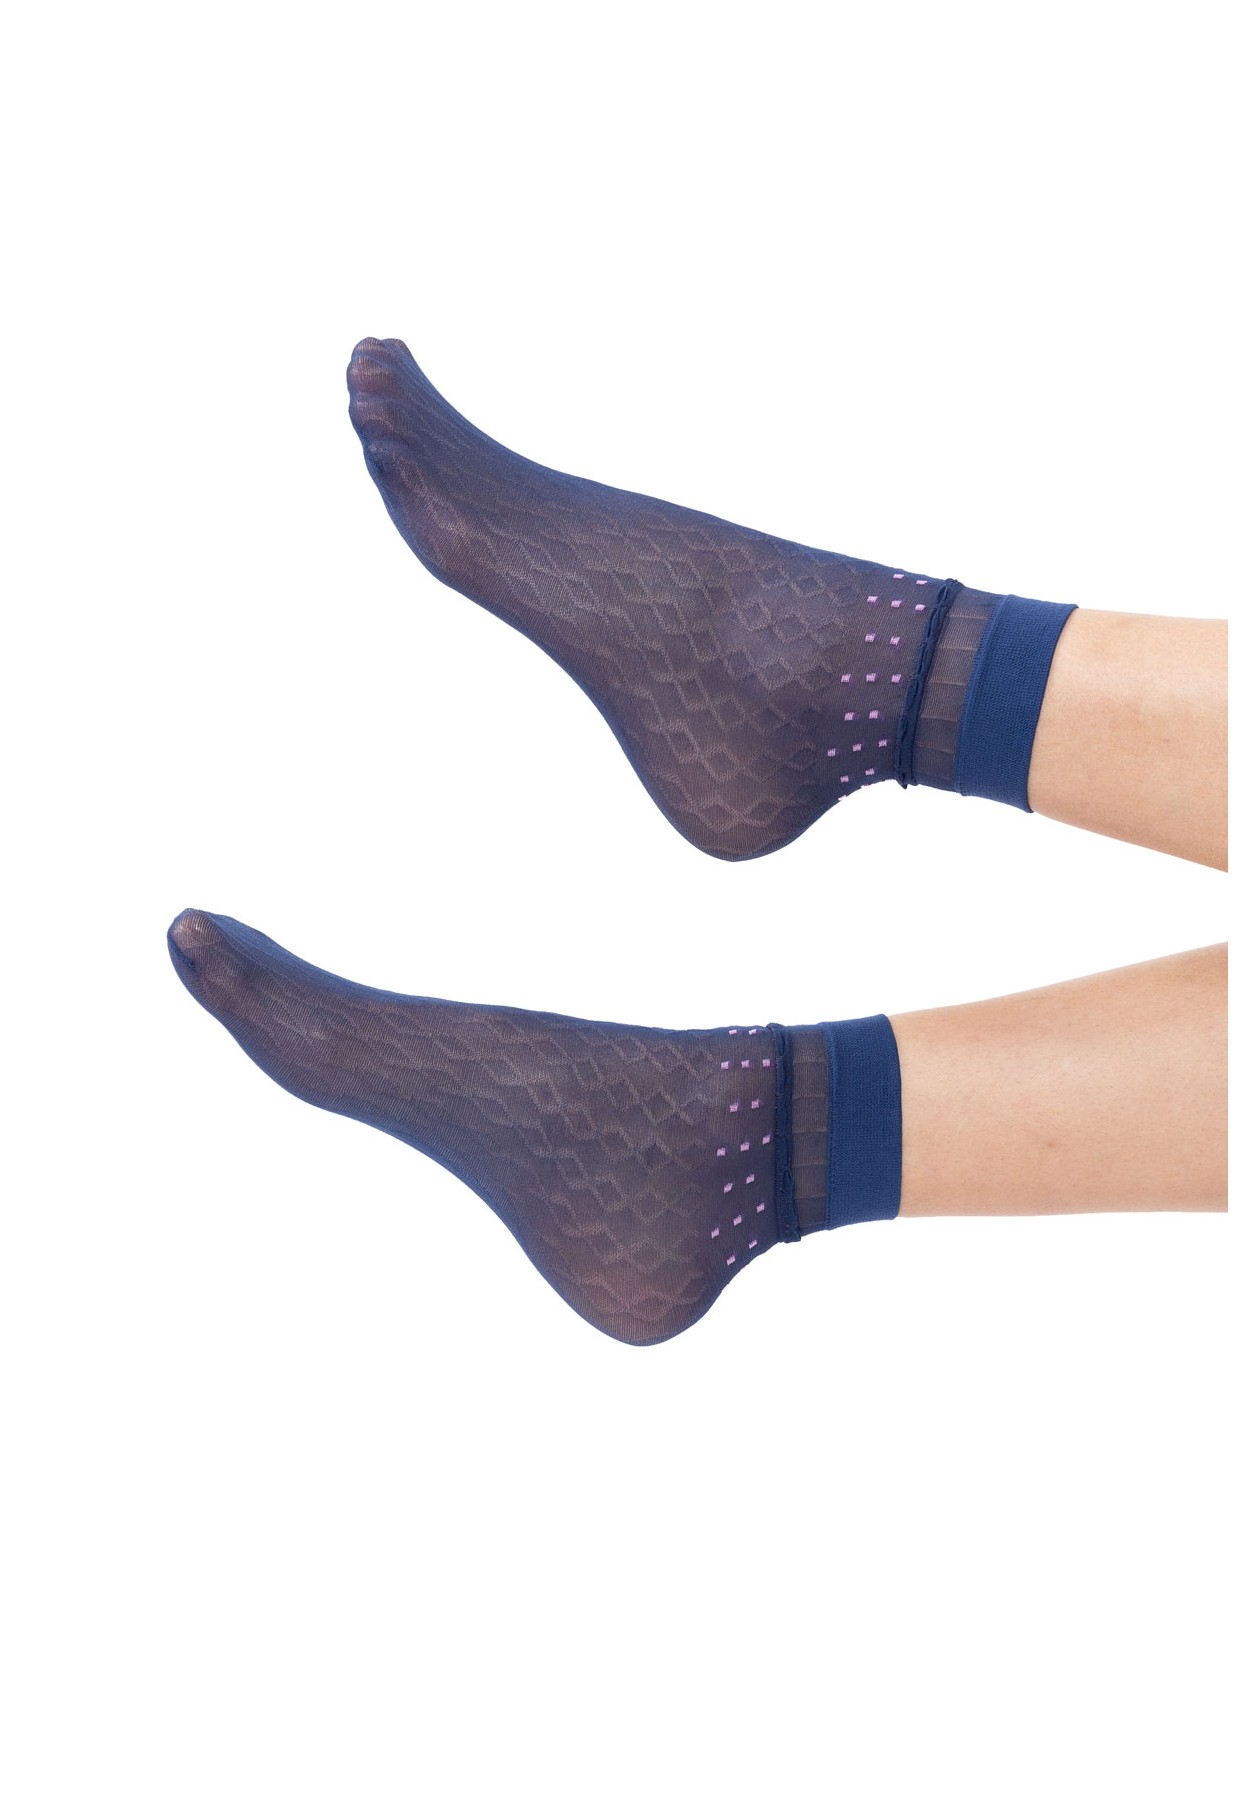 Fantasy Socken mit Rautenmuster 20 Den Farbe Blau